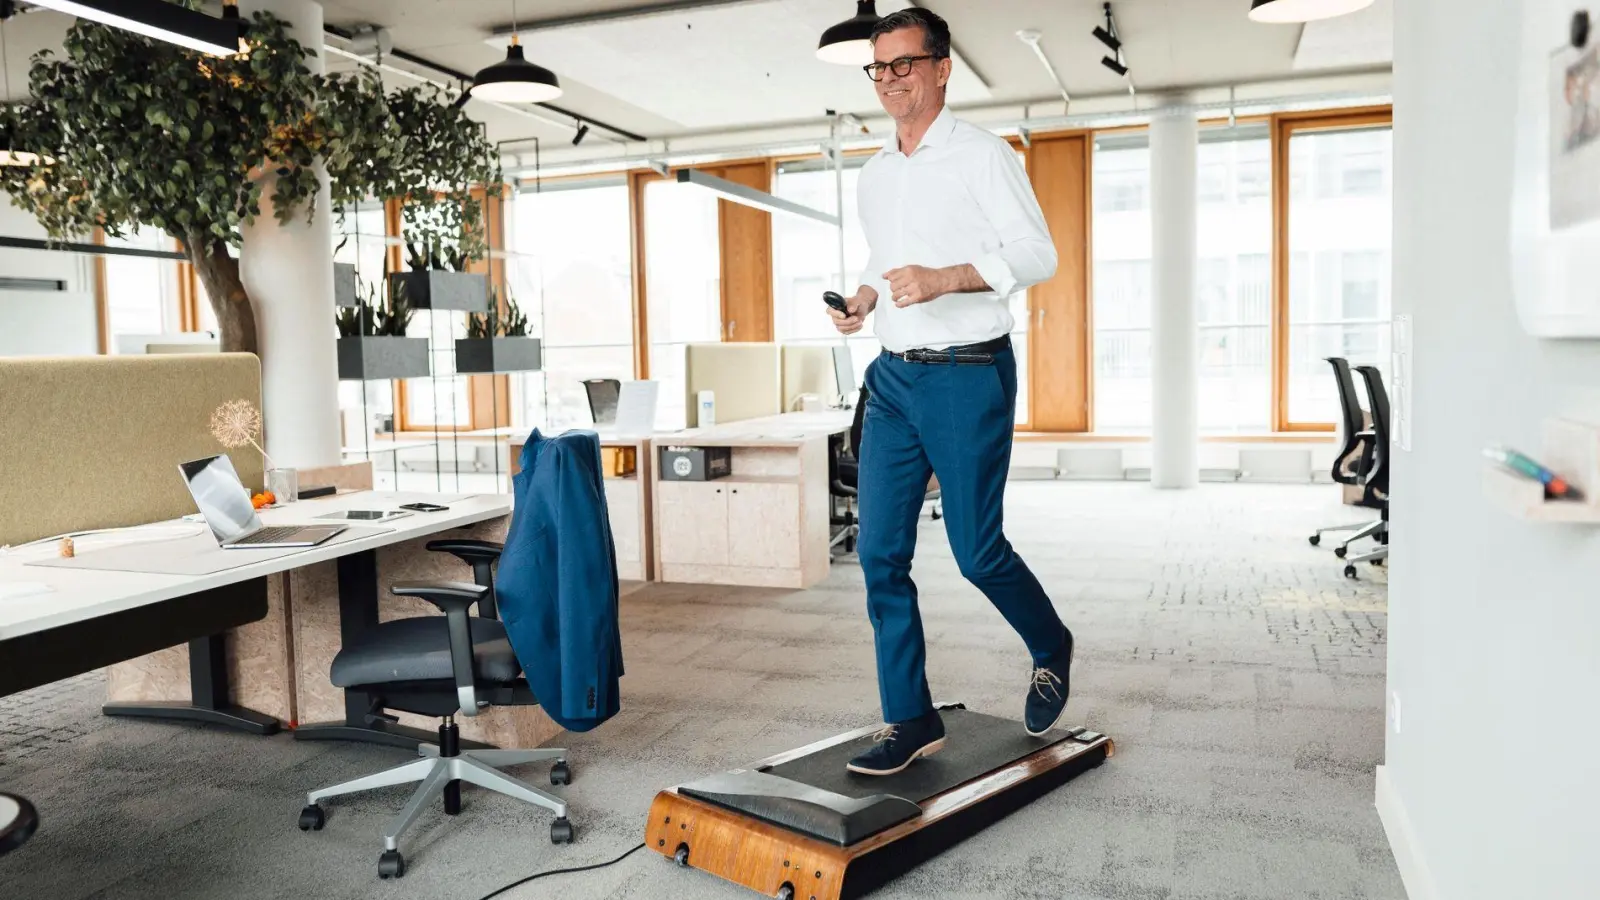 Mal eben 1000 Schritte sammeln: Wer ein Walking Pad nutzt, kann Büroarbeit und Bewegung miteinander verbinden. (Foto: Joseffson/Westend61/dpa-tmn)